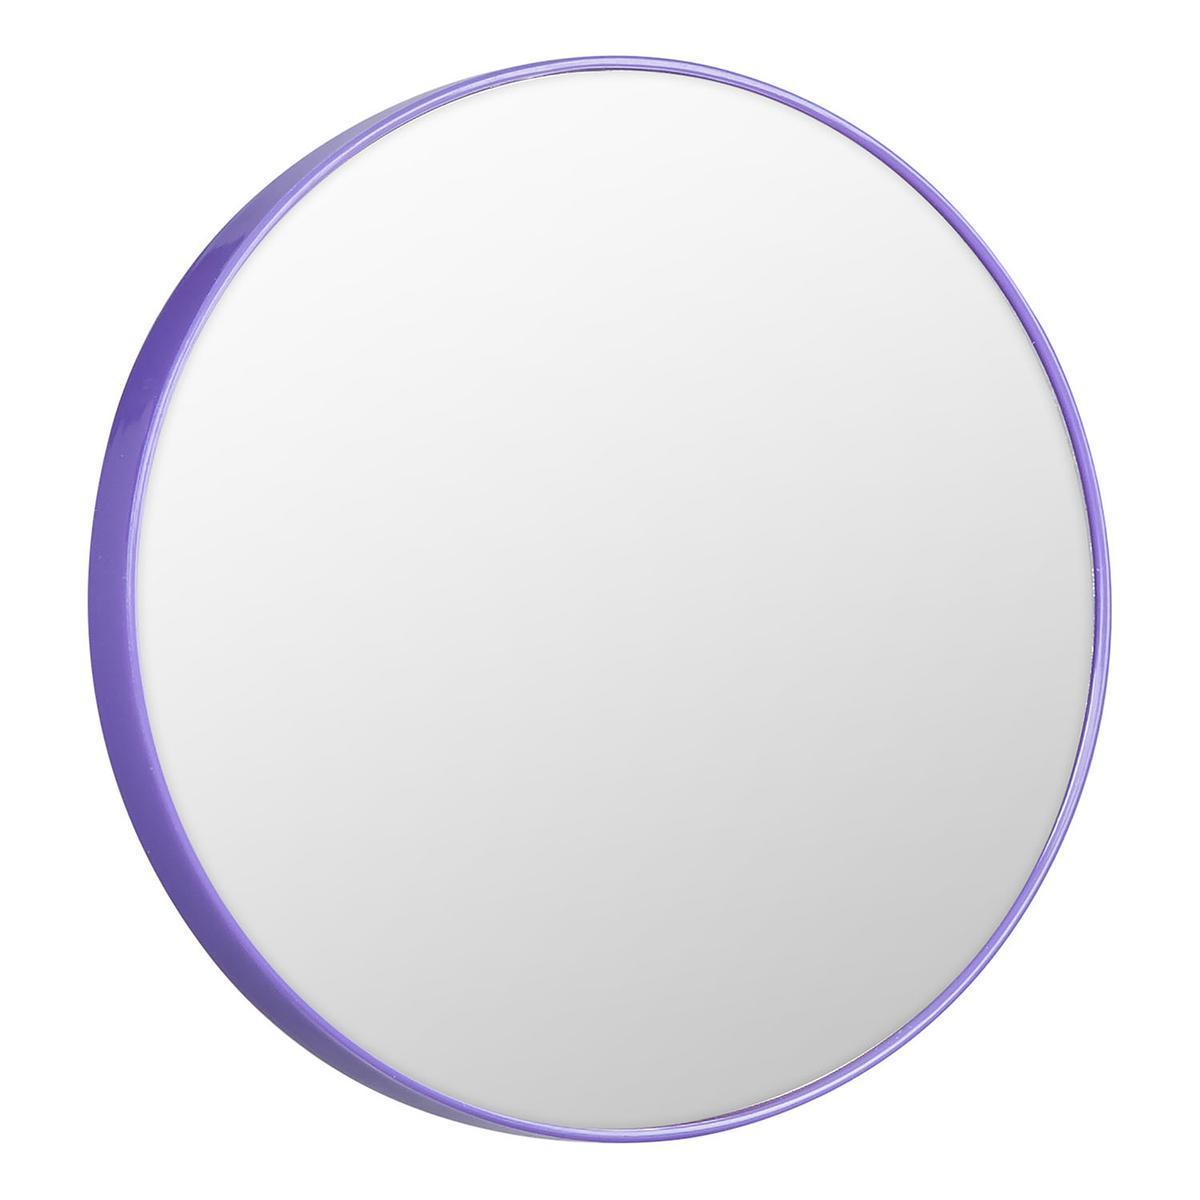 Miroir effet grossissant - ø 9.8 x l 1.5 cm - Noir, violet, blanc - COSMETIC CLUB